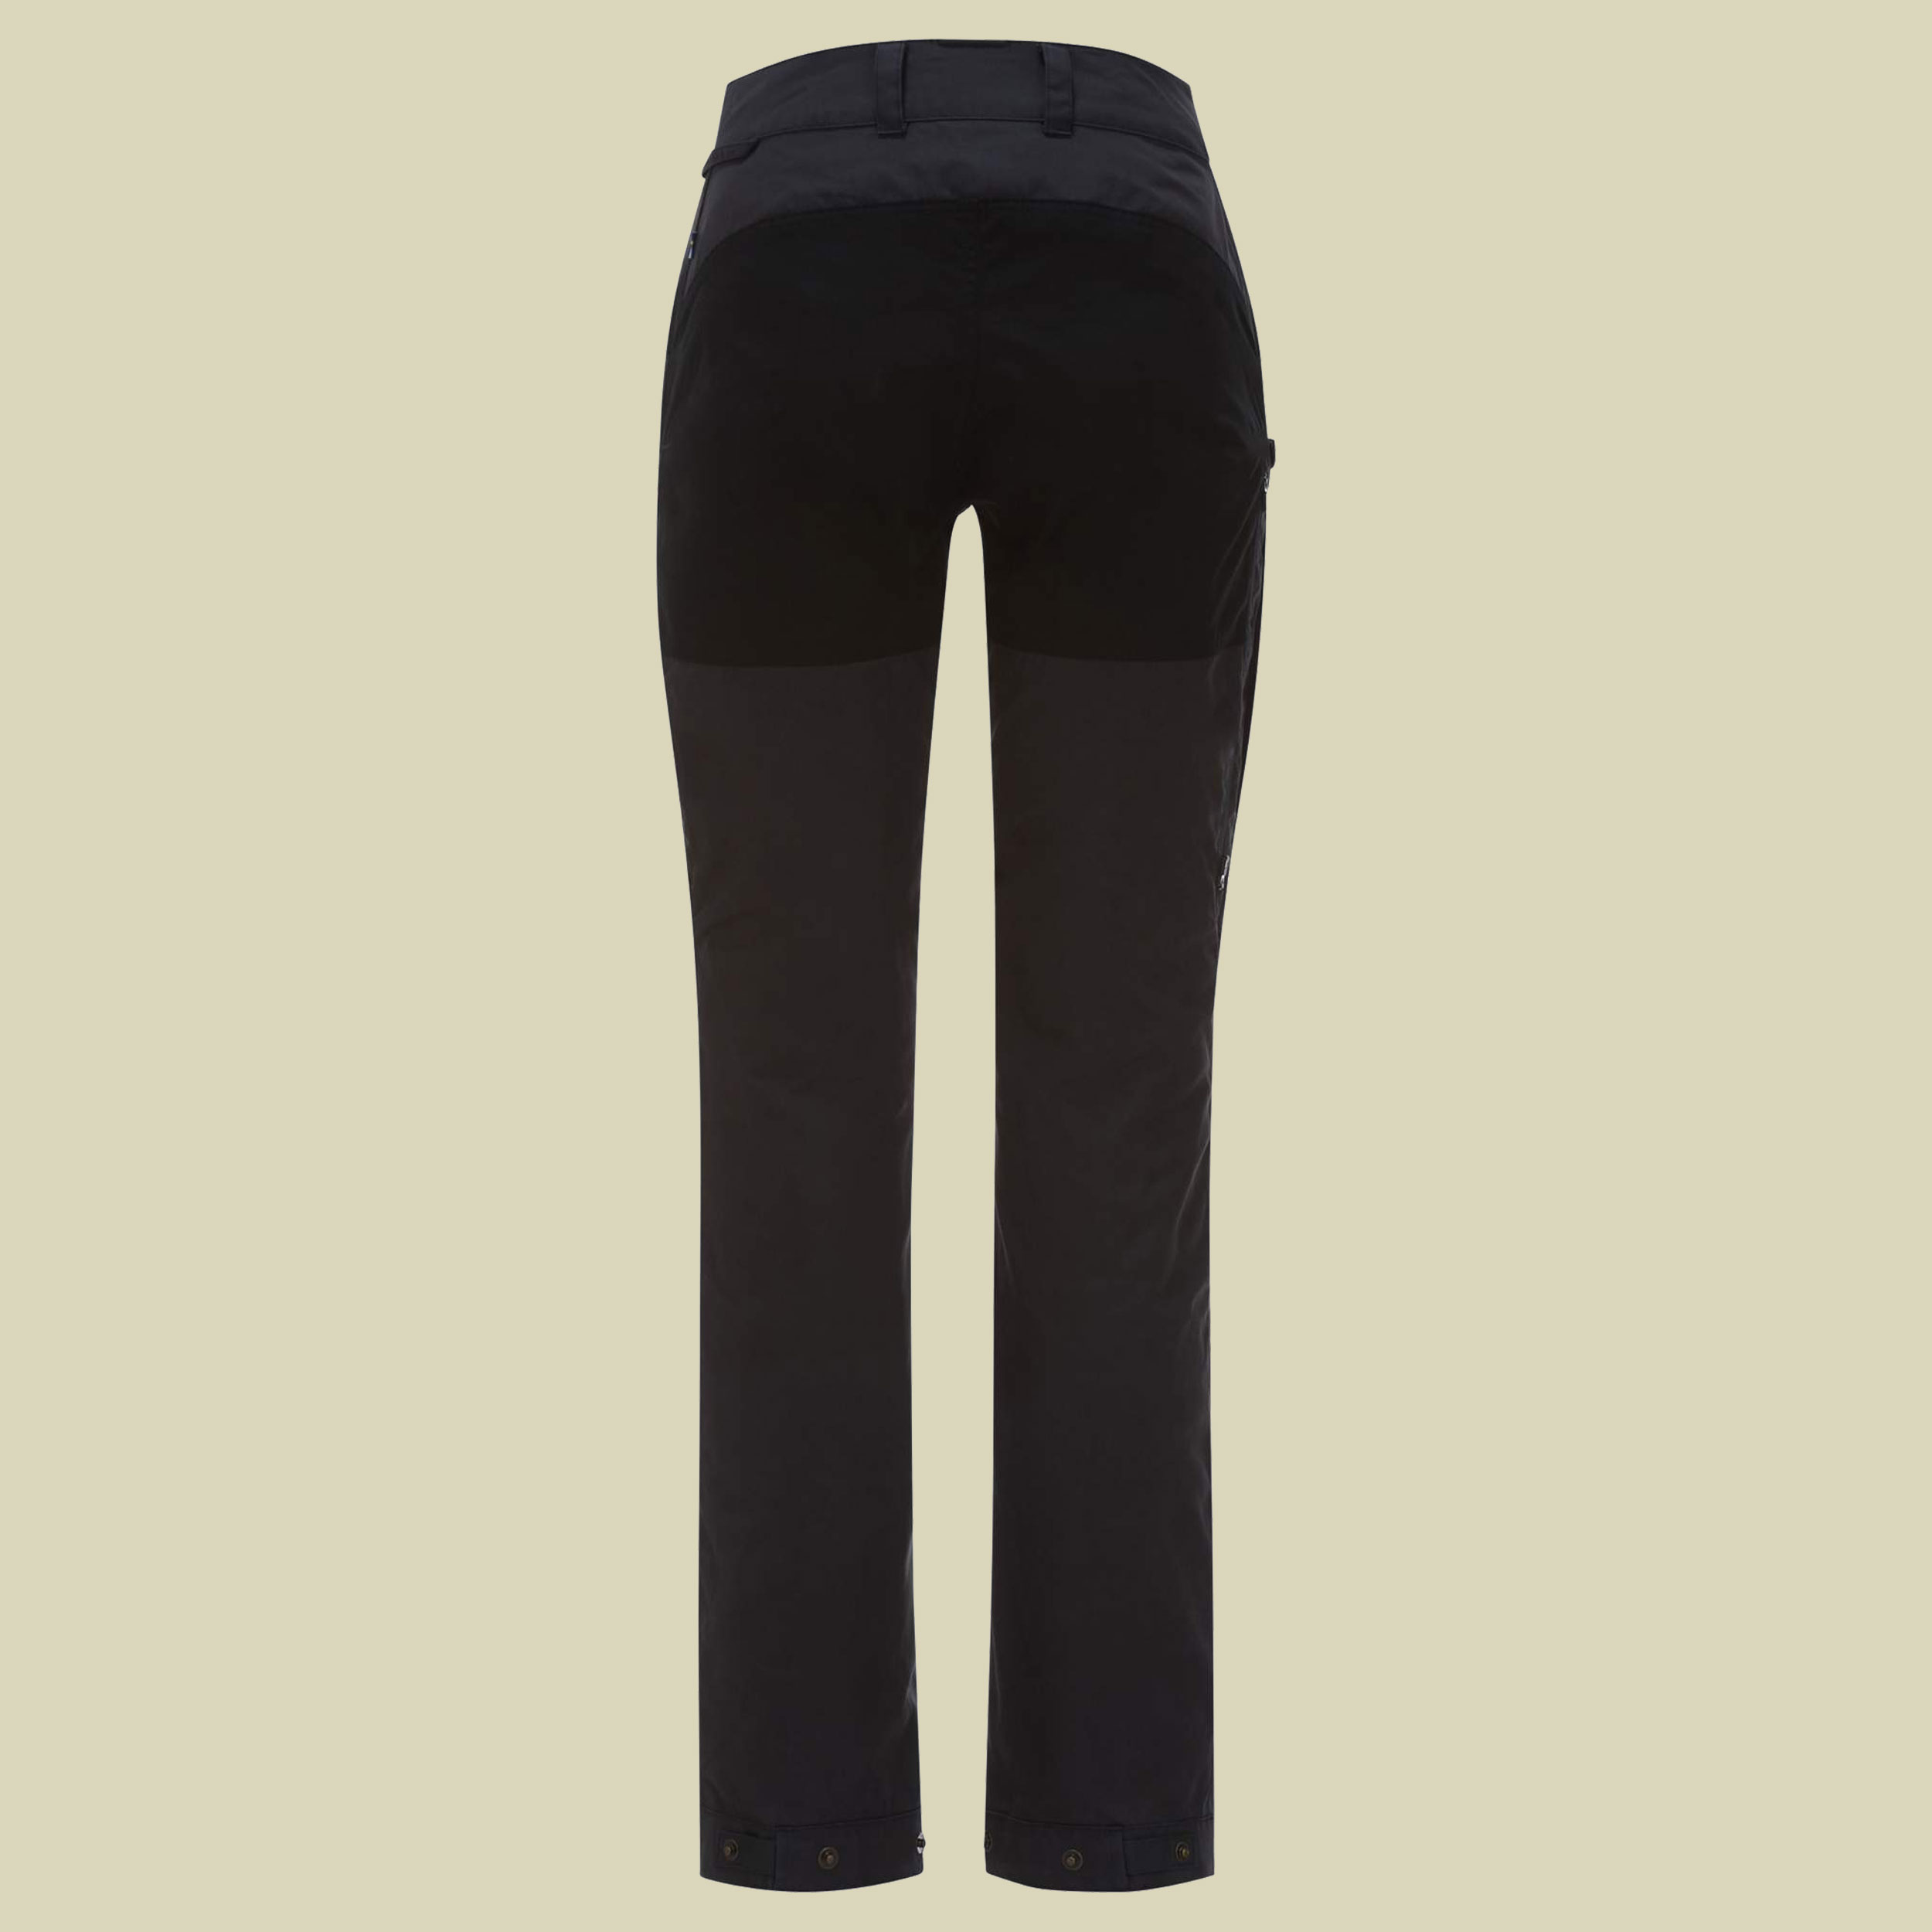 Vidda Pro Ventilated Trousers Women Regular Größe 44 regular Farbe dark grey/black